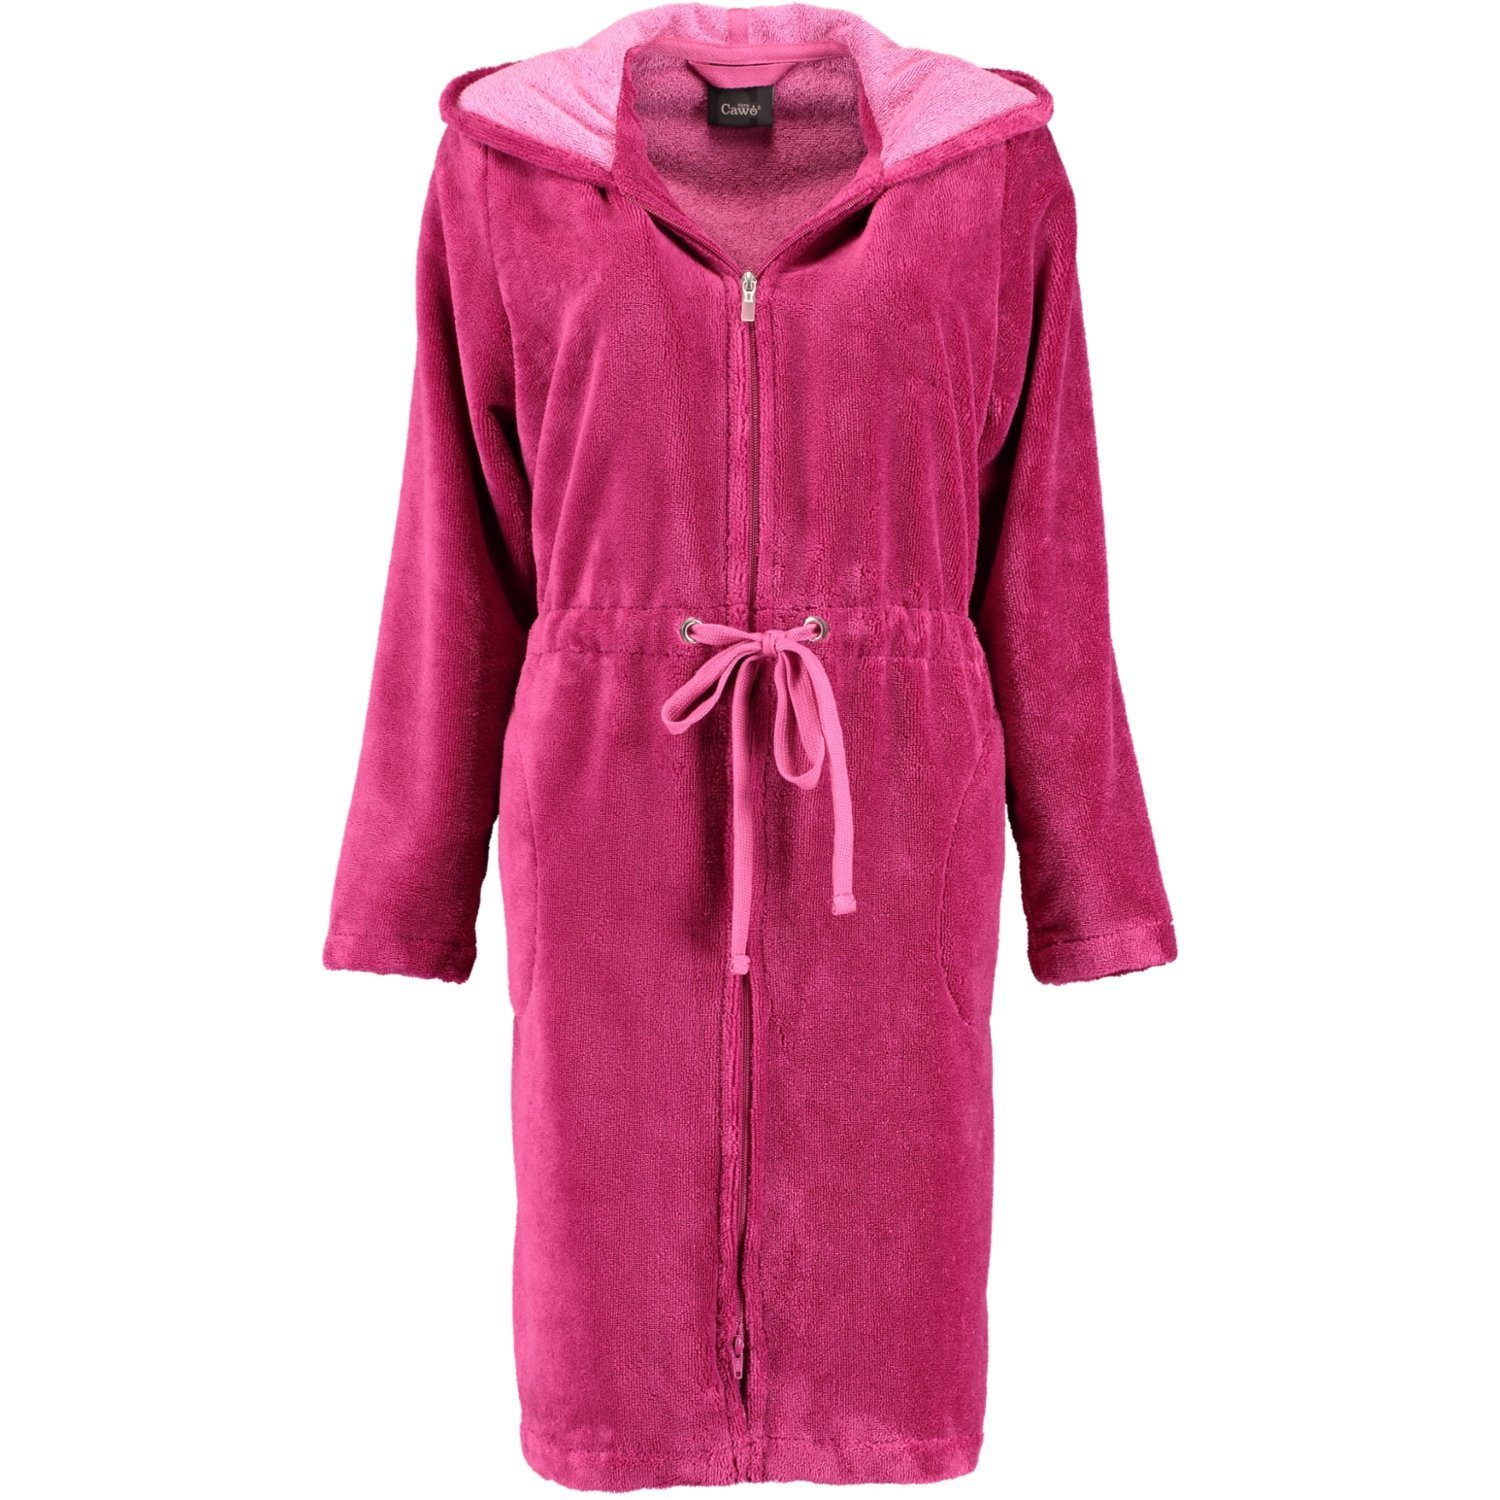 Reißverschluss, Cawö pink Cawö Home Baumwollmischung, Kurzform, Damenbademantel Reißverschluss 822, 22